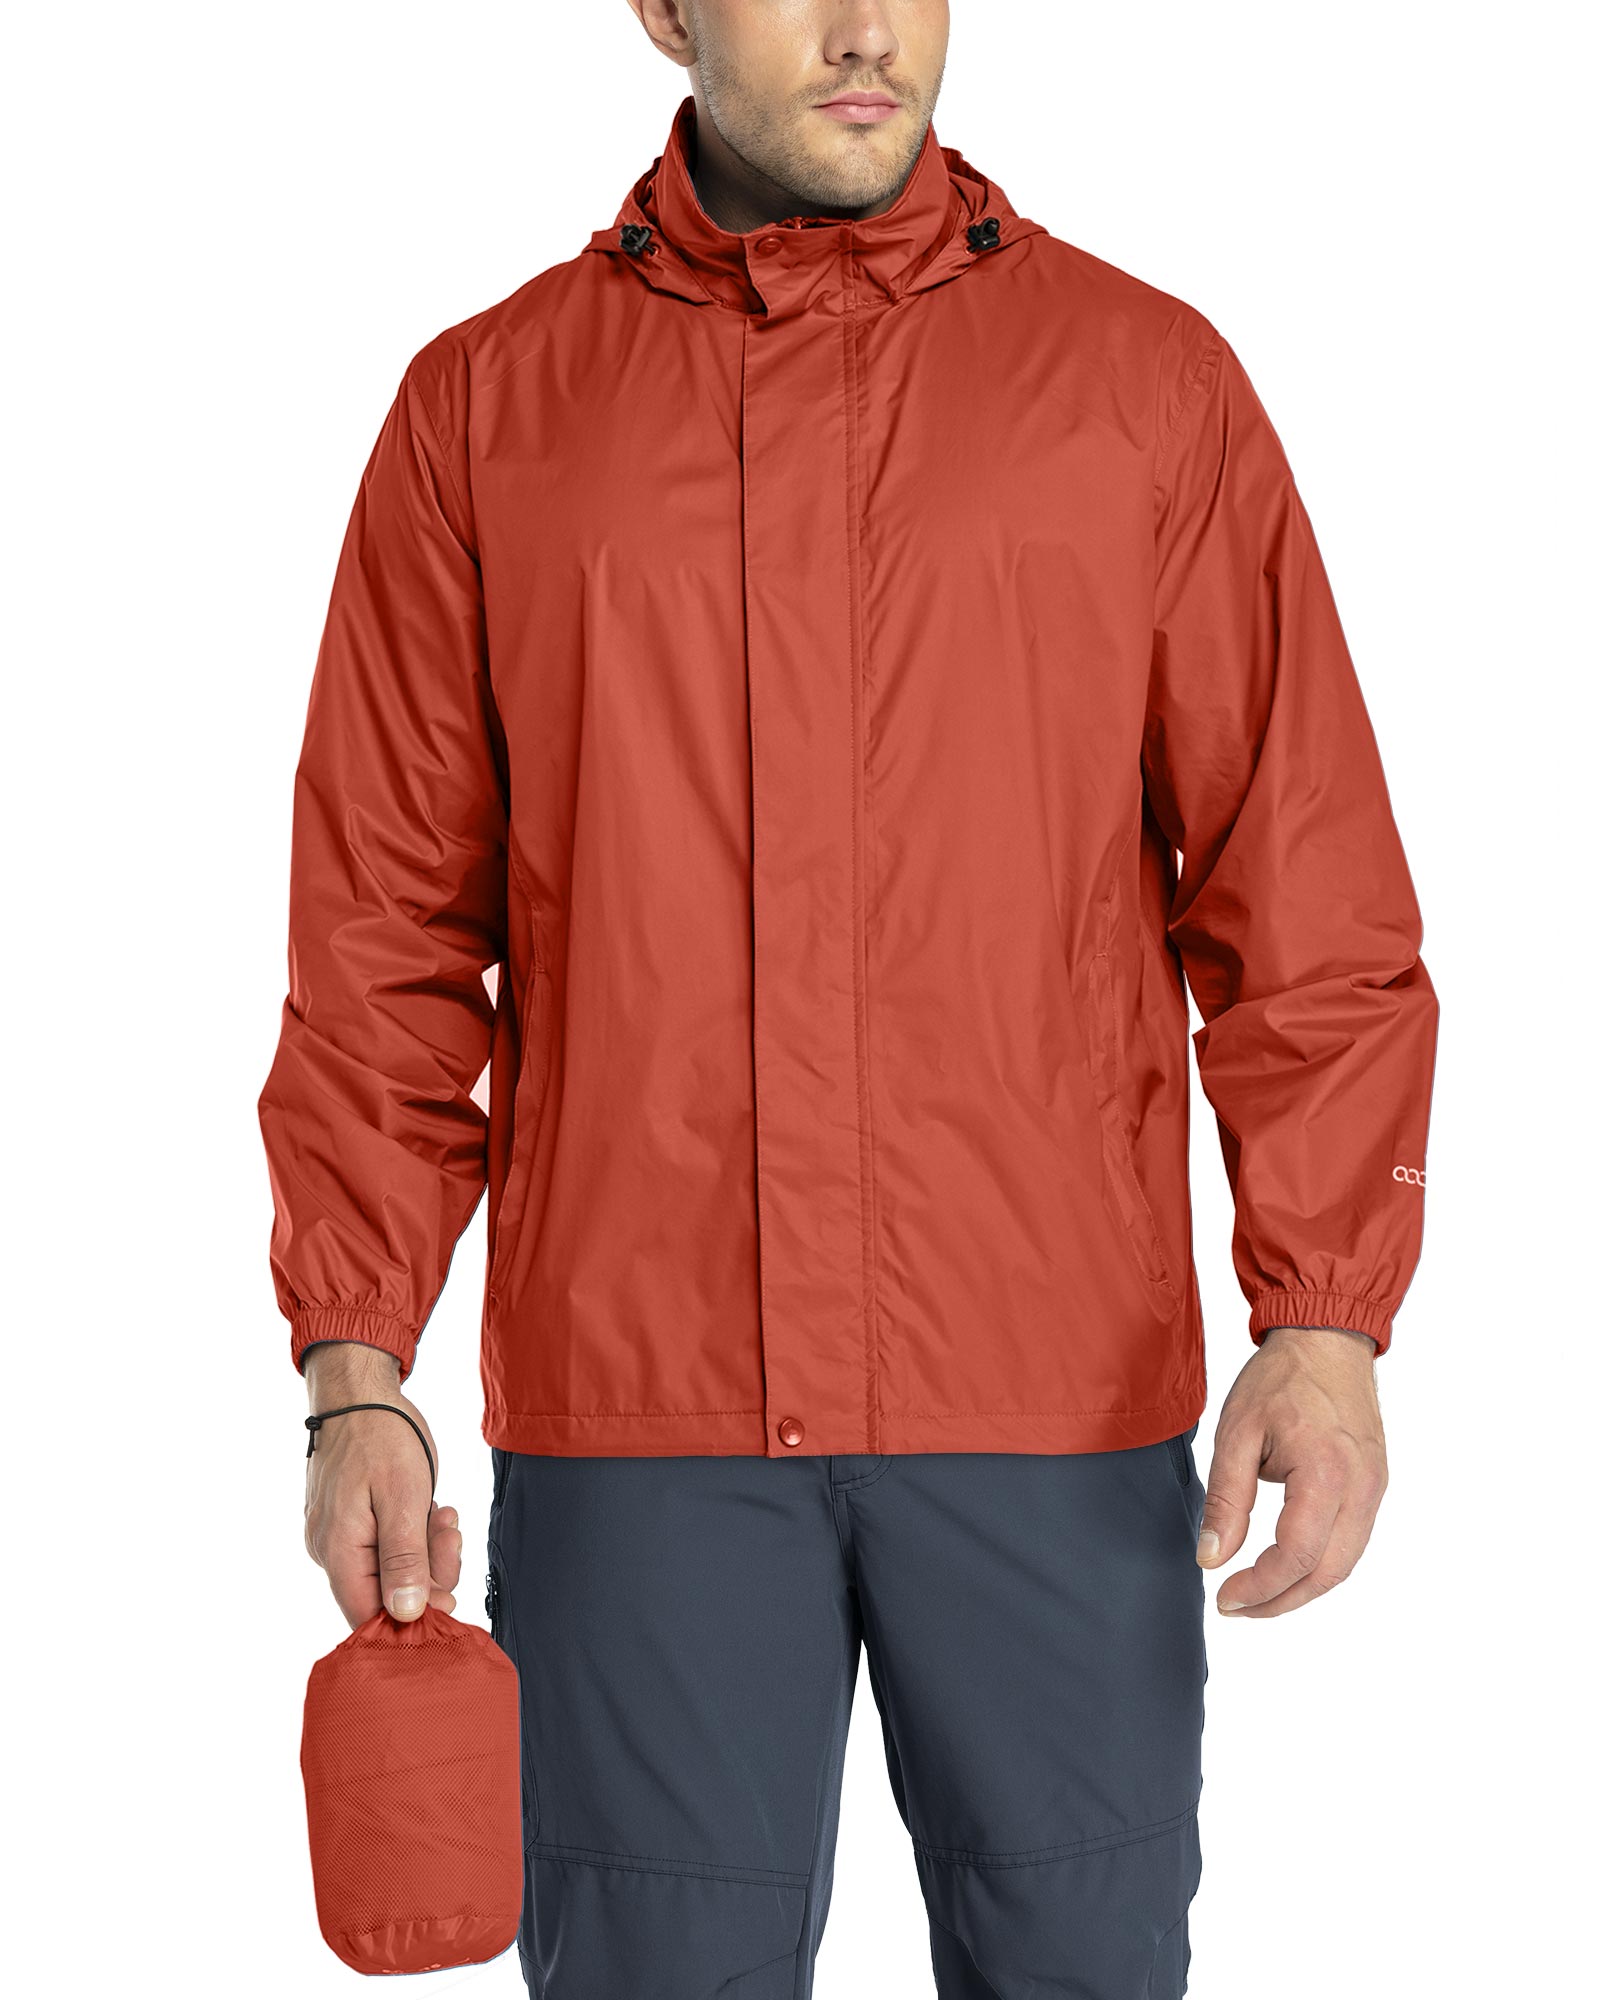 Men's Water Resistant Zip Up Hooded Lightweight Windbreaker Rain Jacket  (Navy Blue,S) 